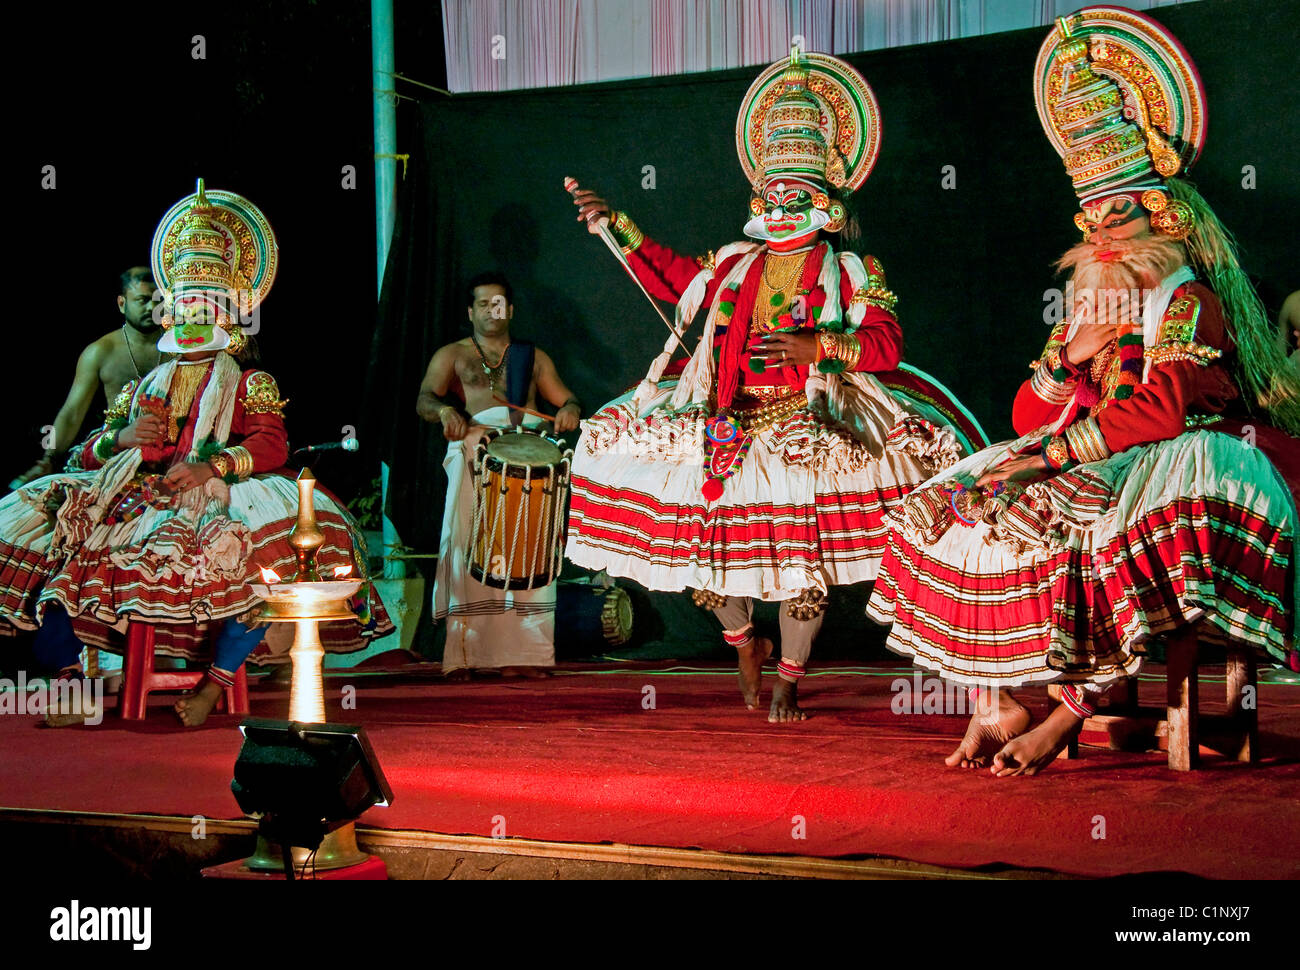 Performance de Kathakali traditionnel, l'un des plus anciens au monde la danse théâtrale-drames, sur scène au Kerala, en Inde. Banque D'Images